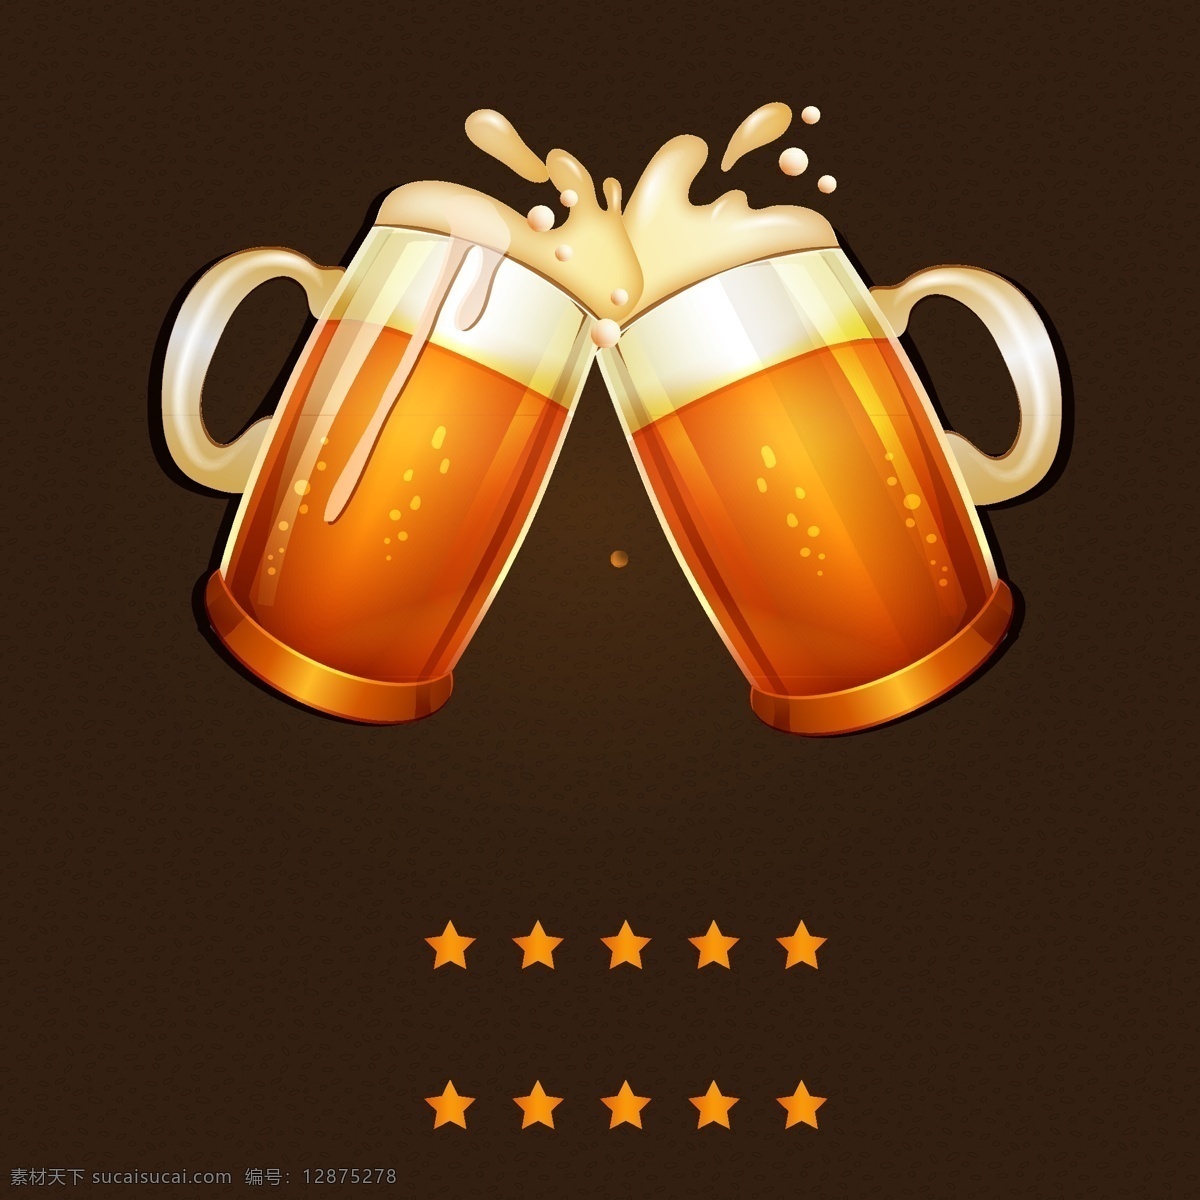 啤酒海报素材 啤酒海报 啤酒 海报 海报模板 矢量啤酒杯 矢量啤酒 矢量星星 黑色